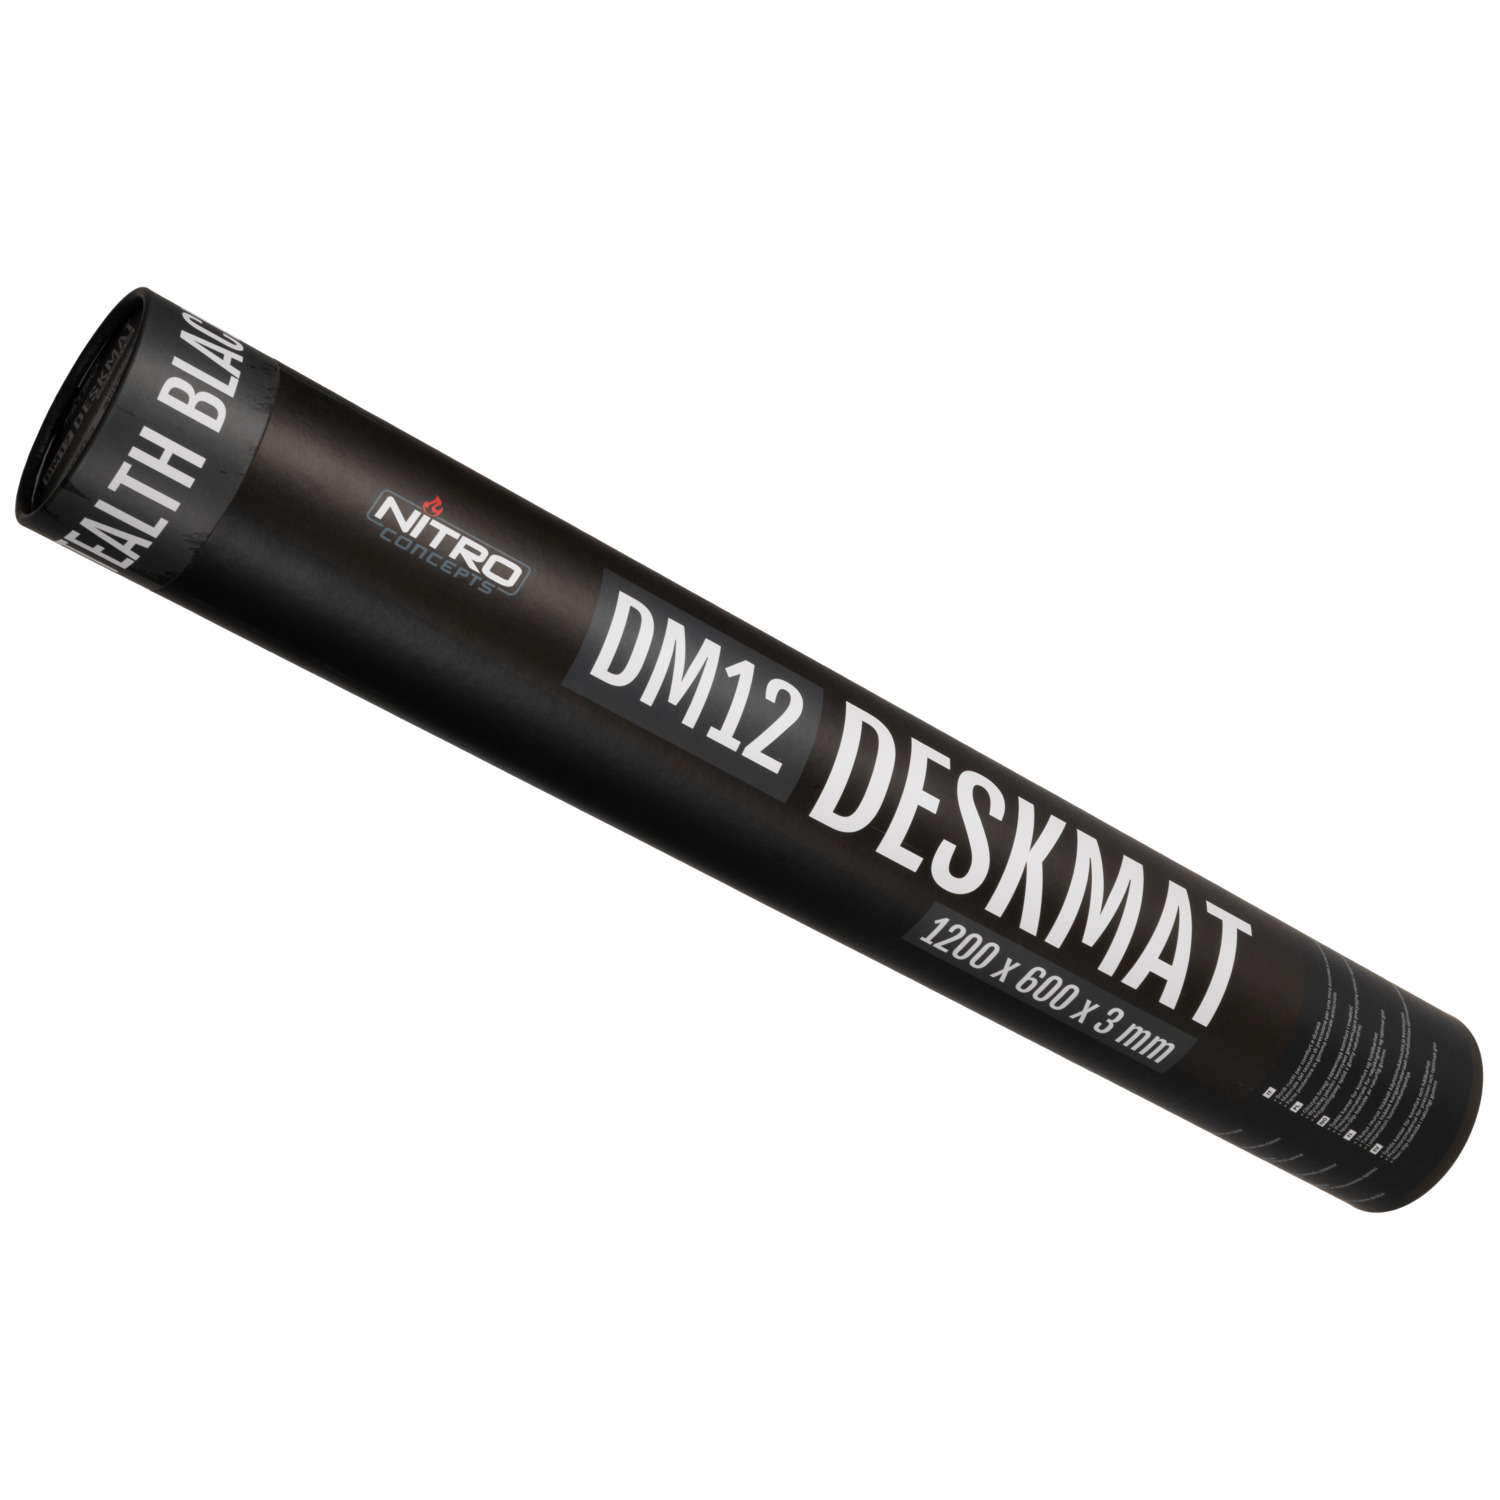 Deskmat DM12, 1200x600mm - schwarz